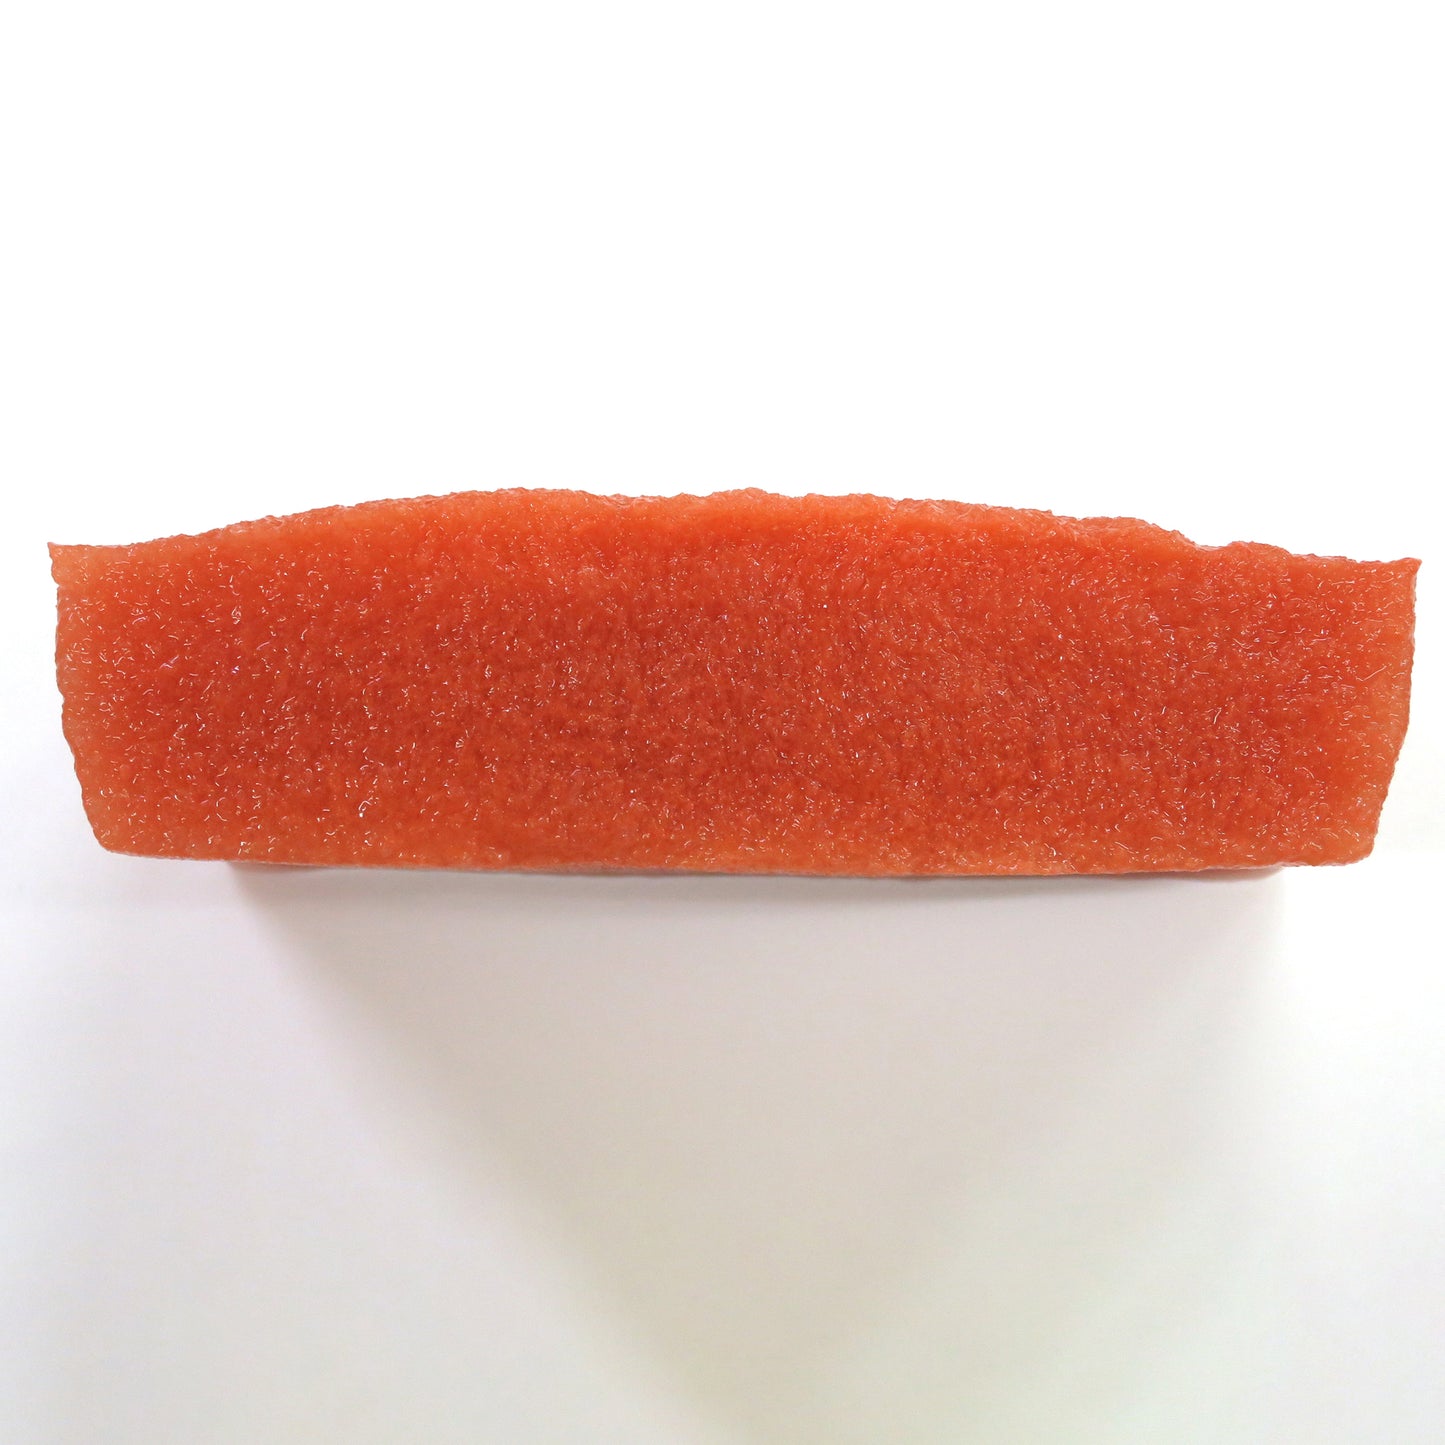 Cutaway side view of the VTT Standard Type. It looks like soft, spongey, slightly moist tissue. 